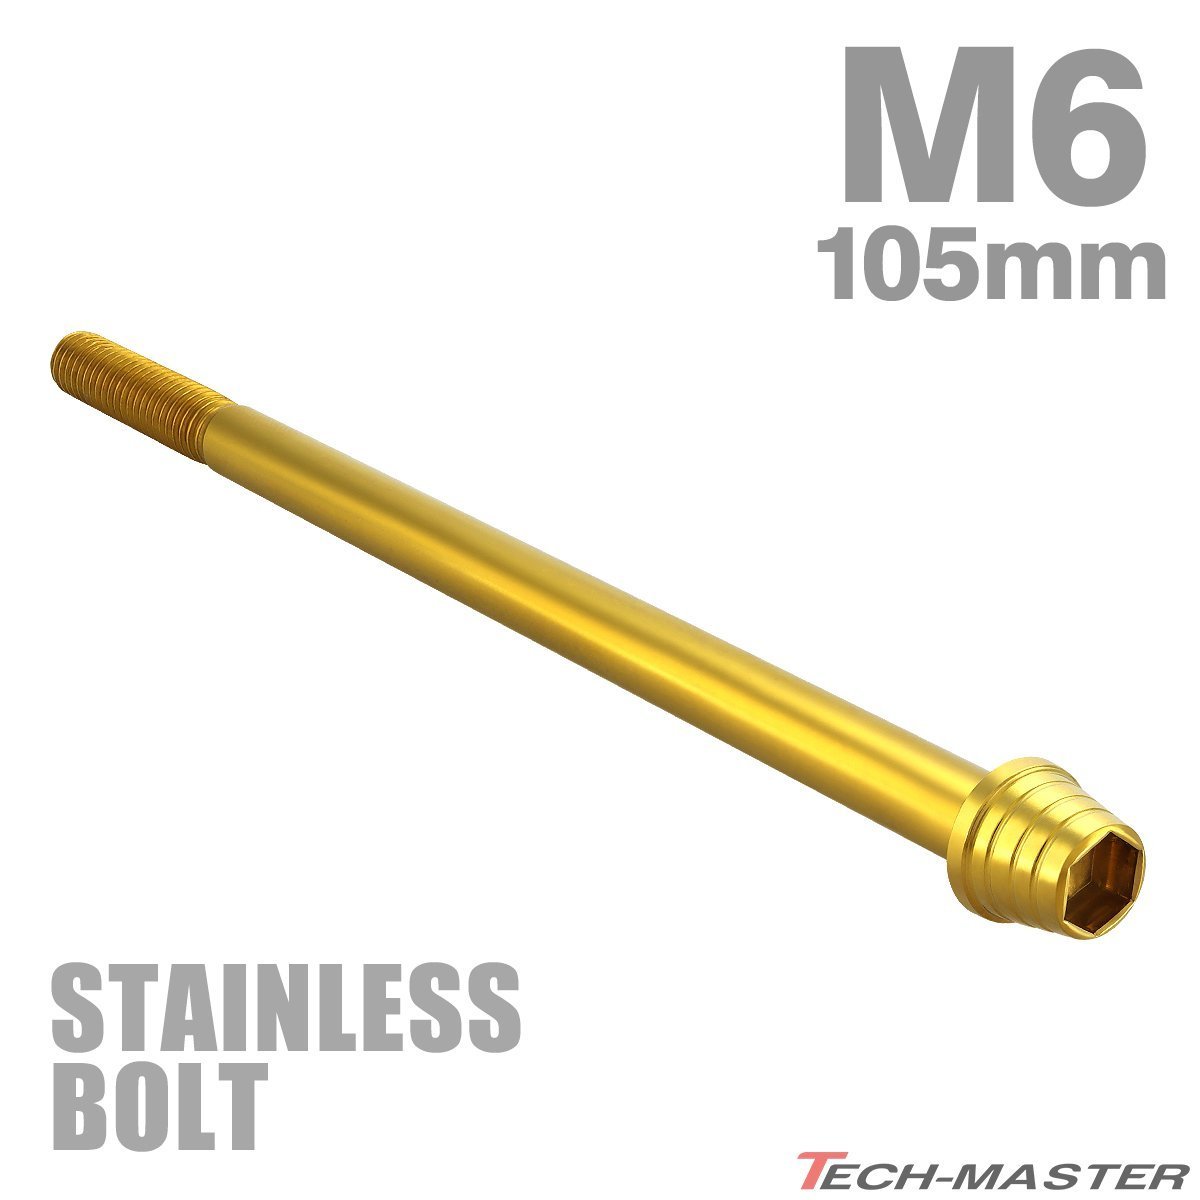 M6×105mm P1.0 キャップボルト テーパーシェルヘッド ステンレス ゴールド カウル フェンダー エンジン 車 バイク カスタム 1個 TB0326_画像1